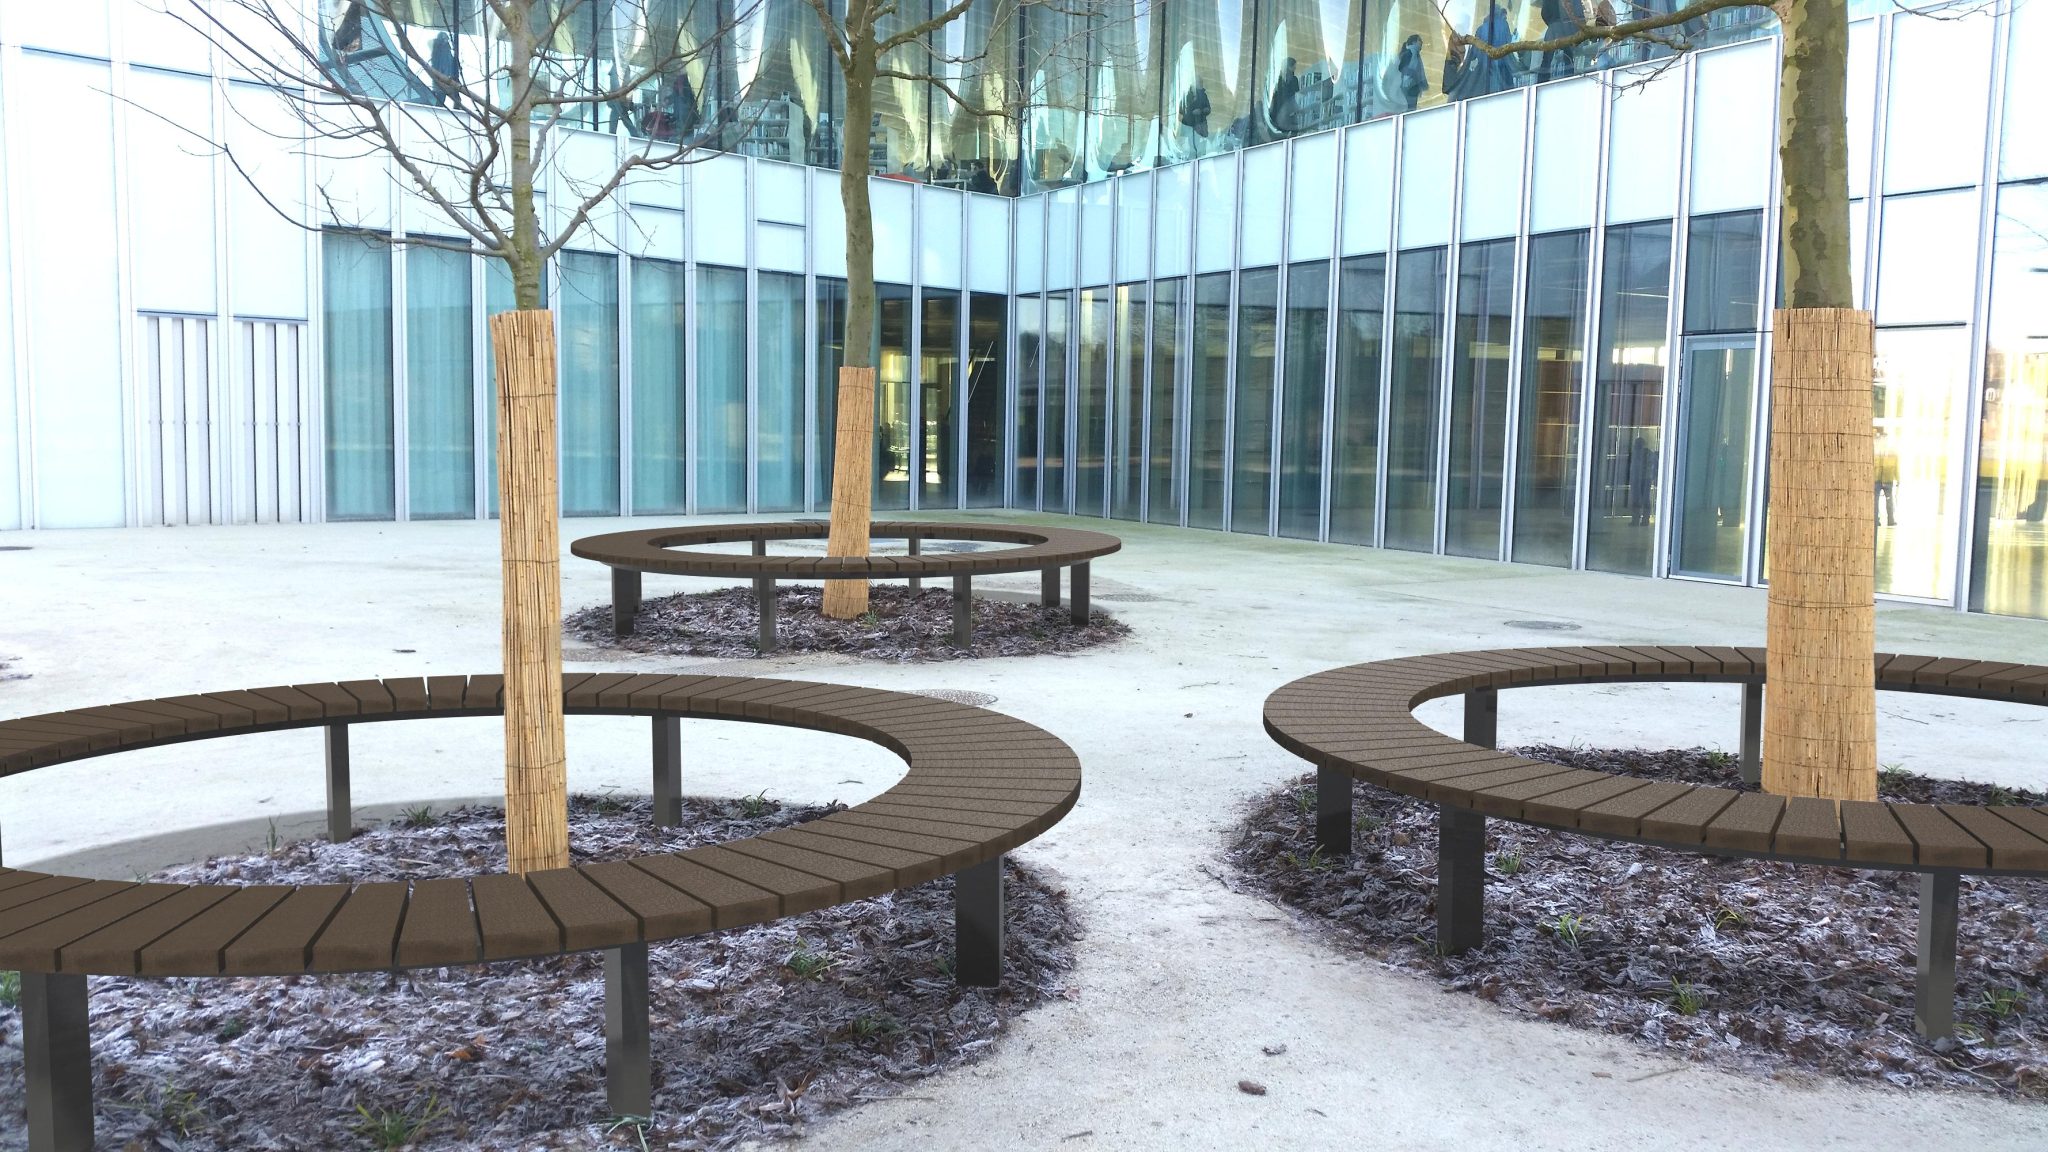 Espace extérieur moderne avec bancs circulaires et arbres.